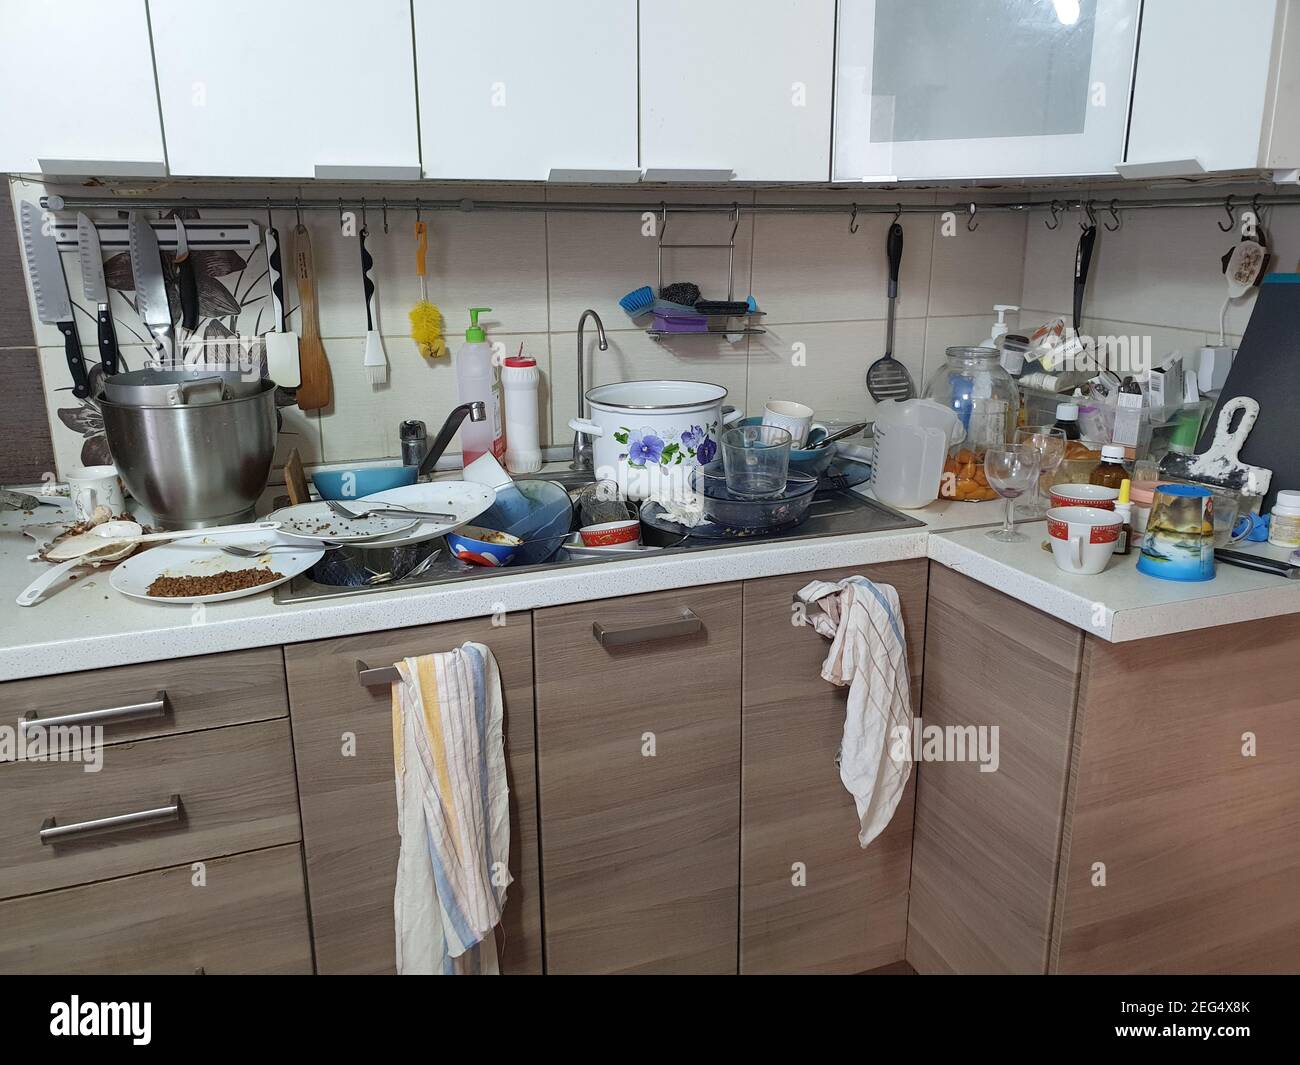 Schmutziges Geschirr in der Küche, Unterbrechungen und Unterbrechungen in der Wasserversorgung, eine schlampige Gastgeberin. Stockfoto